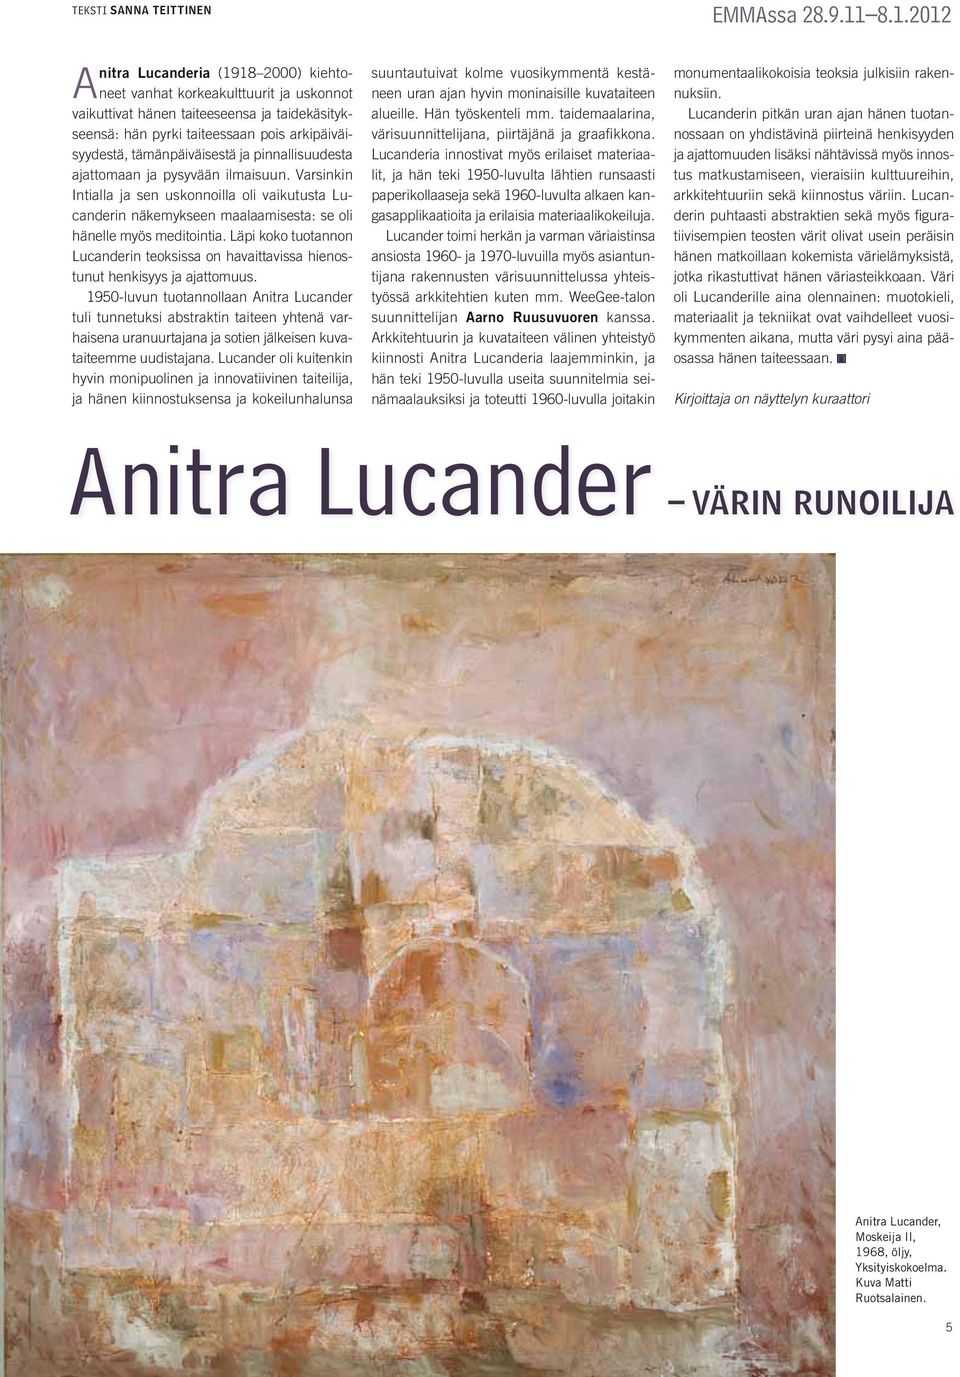 tämänpäiväisestä ja pinnallisuudesta ajattomaan ja pysyvään ilmaisuun. Varsinkin Intialla ja sen uskonnoilla oli vaikutusta Lucanderin näkemykseen maalaamisesta: se oli hänelle myös meditointia.